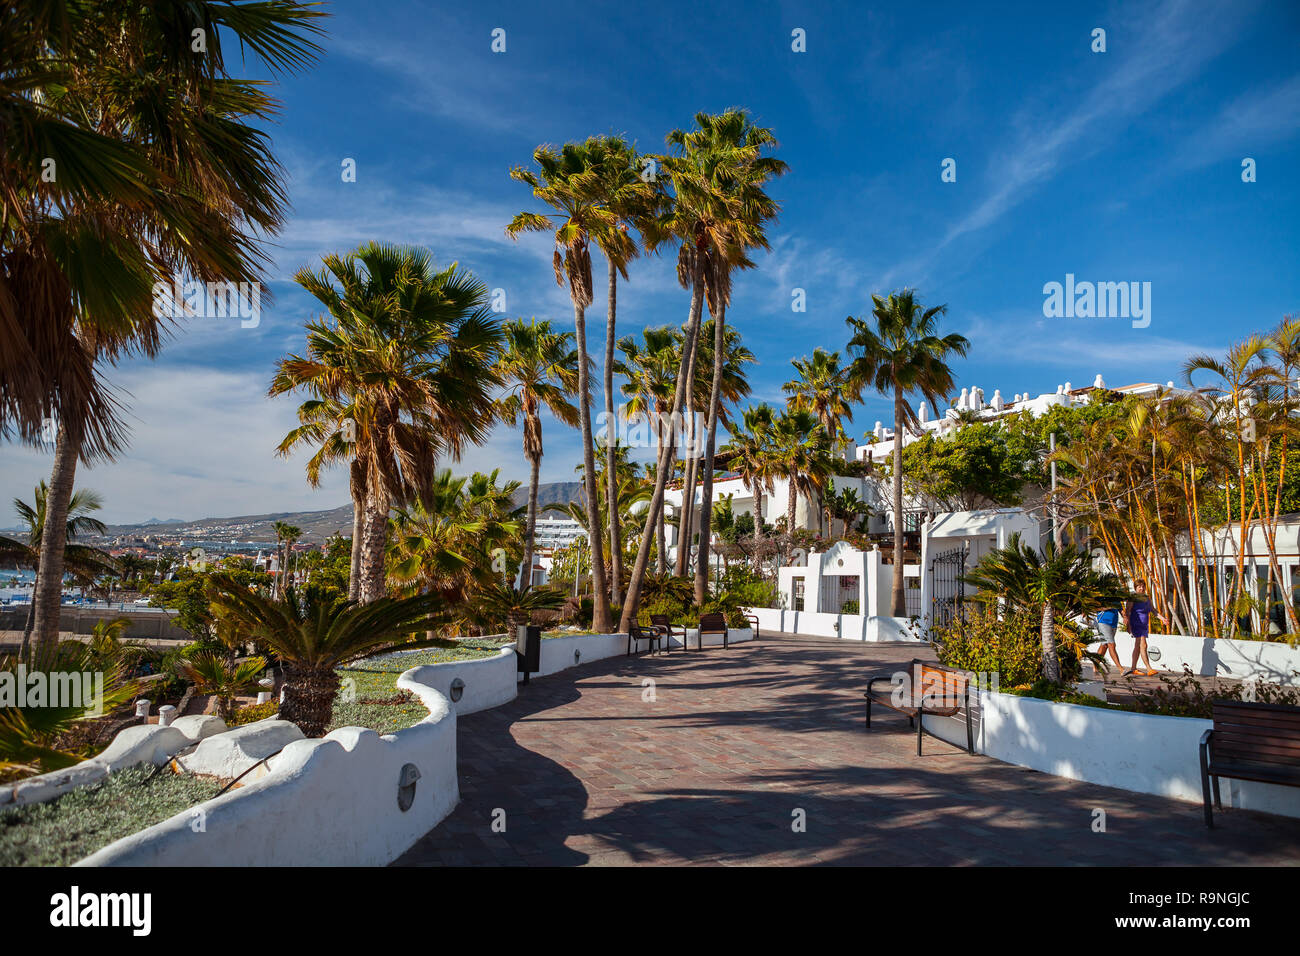 COSTA ADEJE, TENERIFFA - April 8,2014: Schöne Promenade in der Nähe von Hotel Jardin Tropical in Costa Adeje auf Teneriffa, Kanarische Inseln, Spanien. Promenade - pop Stockfoto